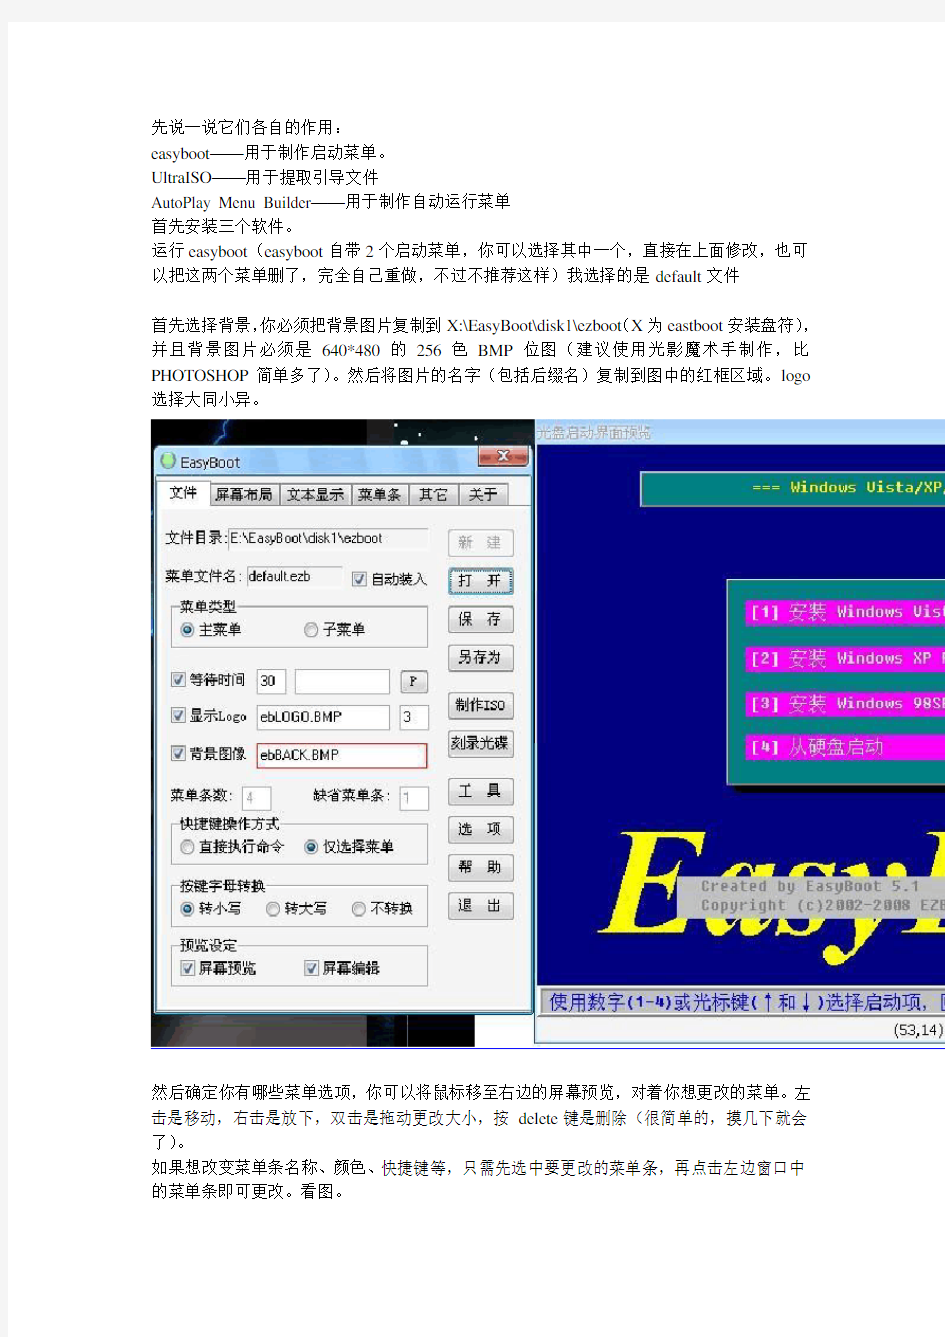 多合一系统制作easyboot+UltraISO+AutoPlay Menu Builder